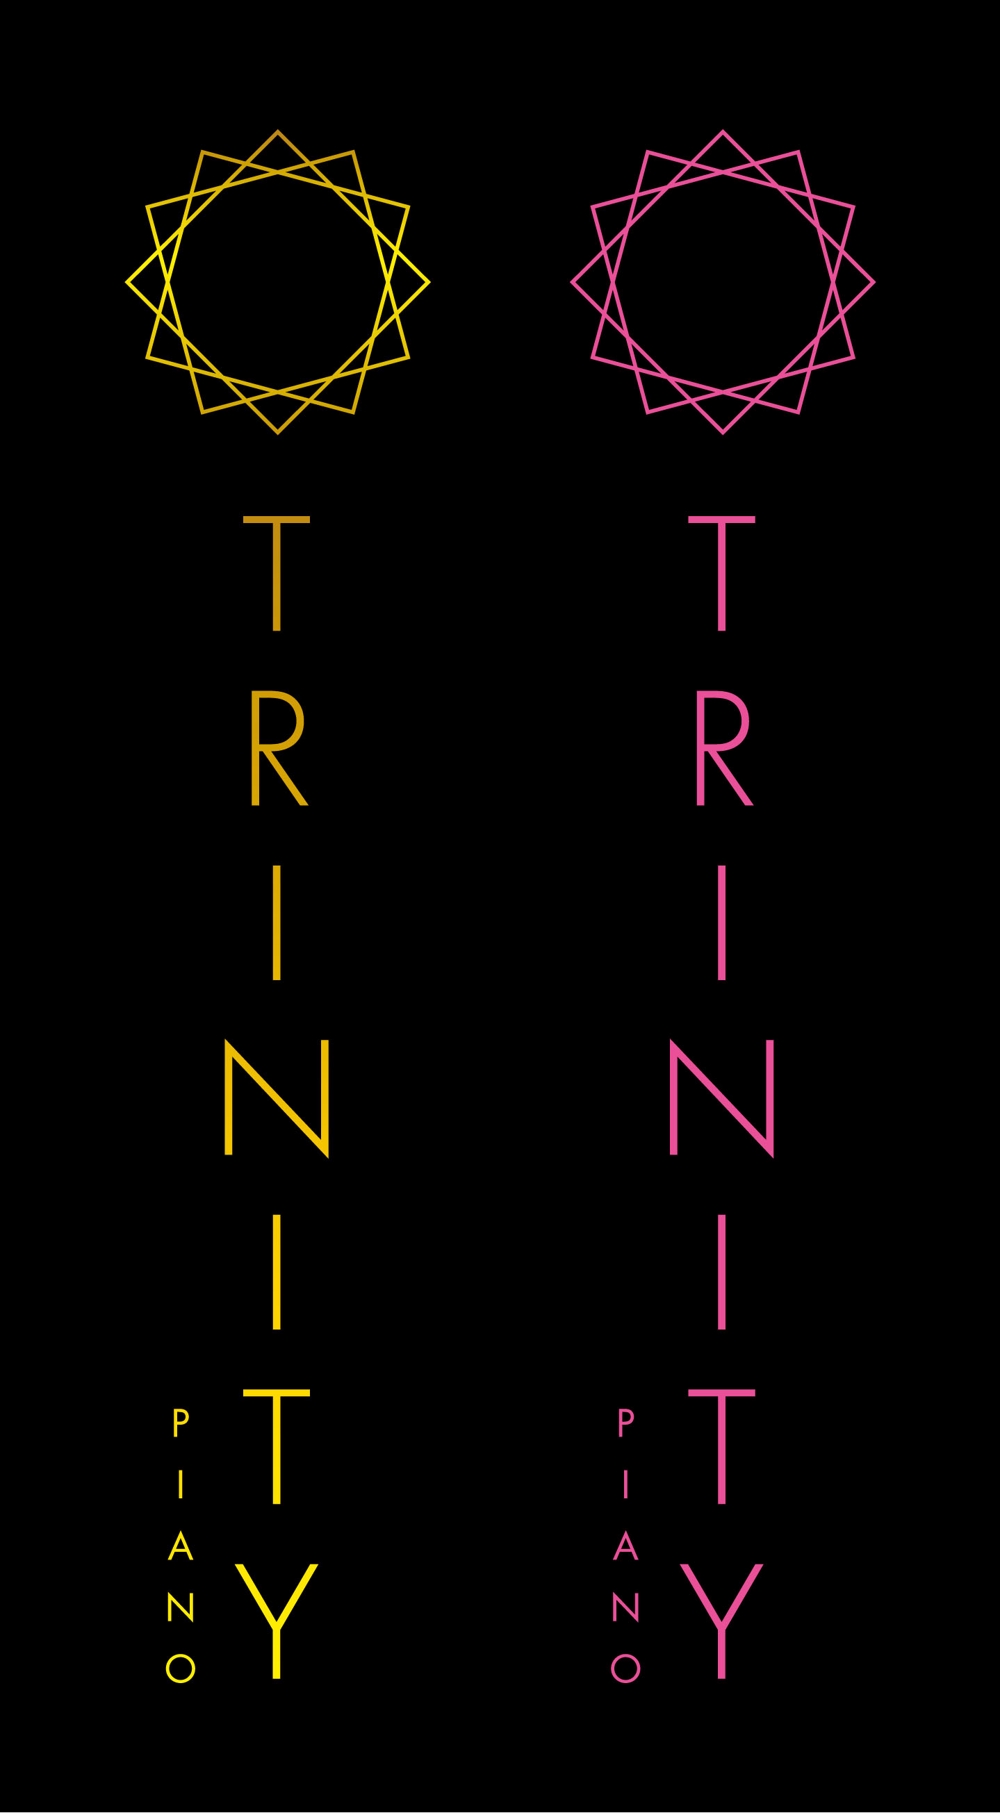 新商品「TRINITY」のロゴ作成